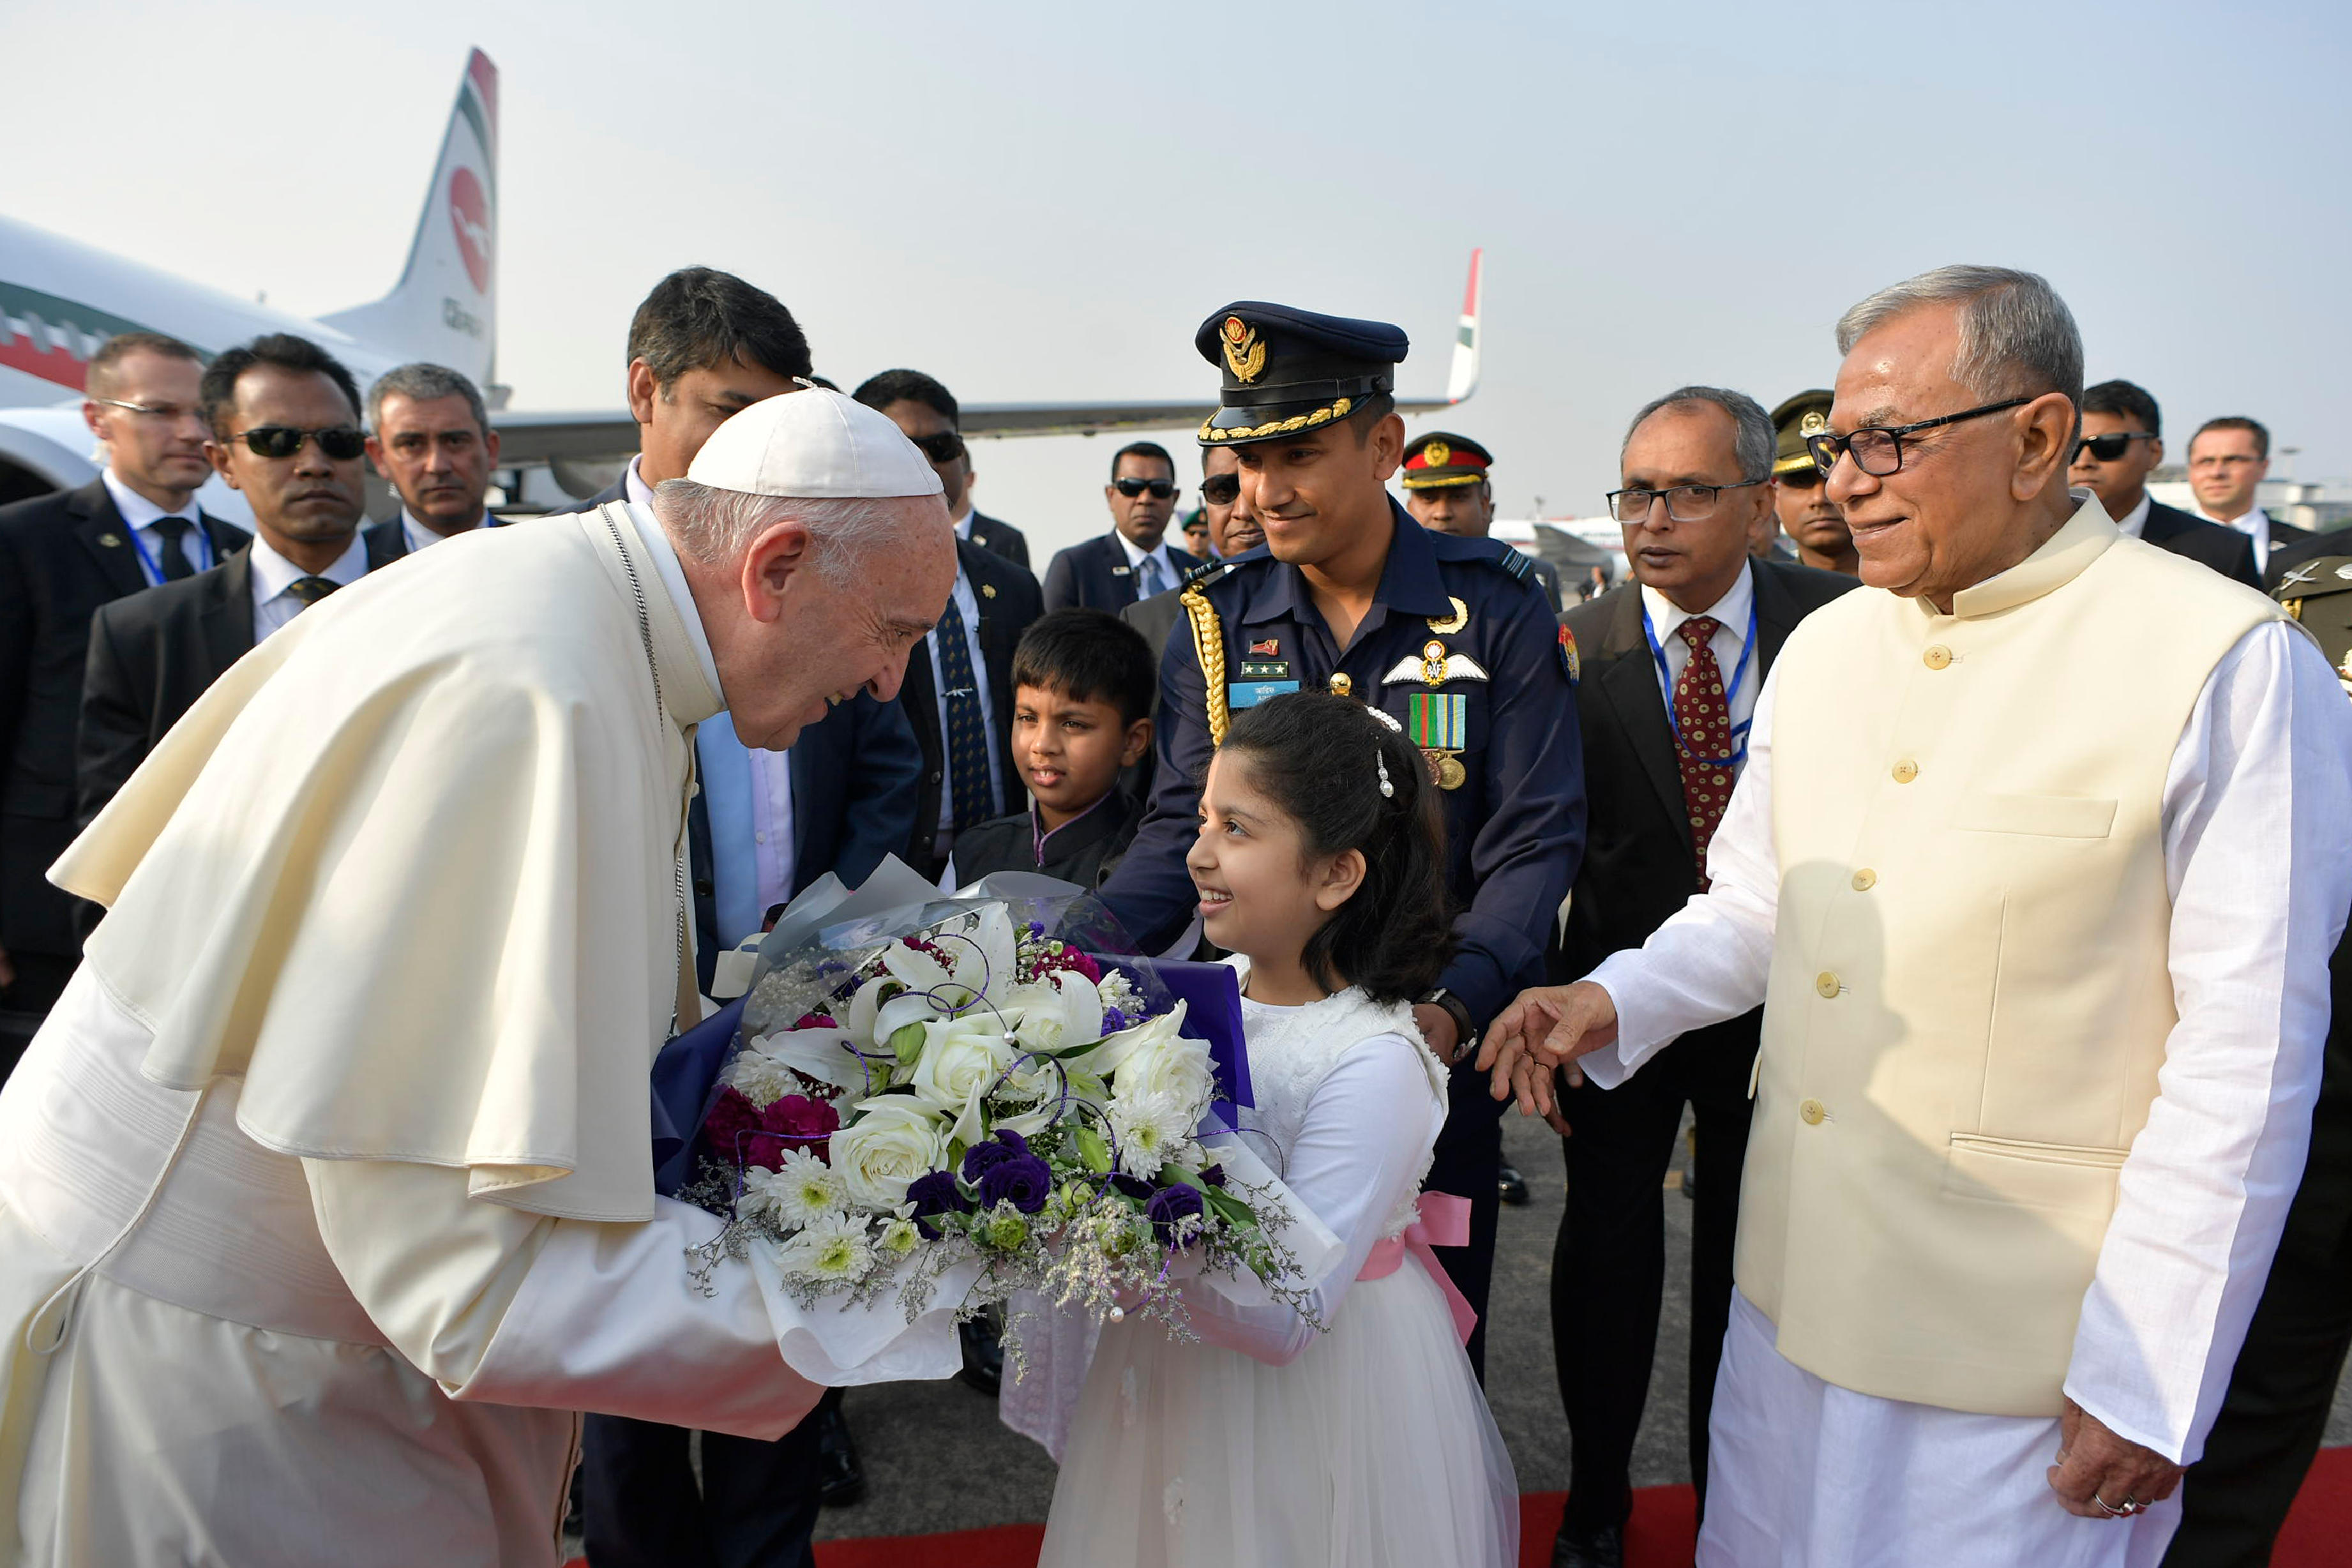 El Papa es recibido en Bangladesh con todos los honores © L'Osservatore Romano